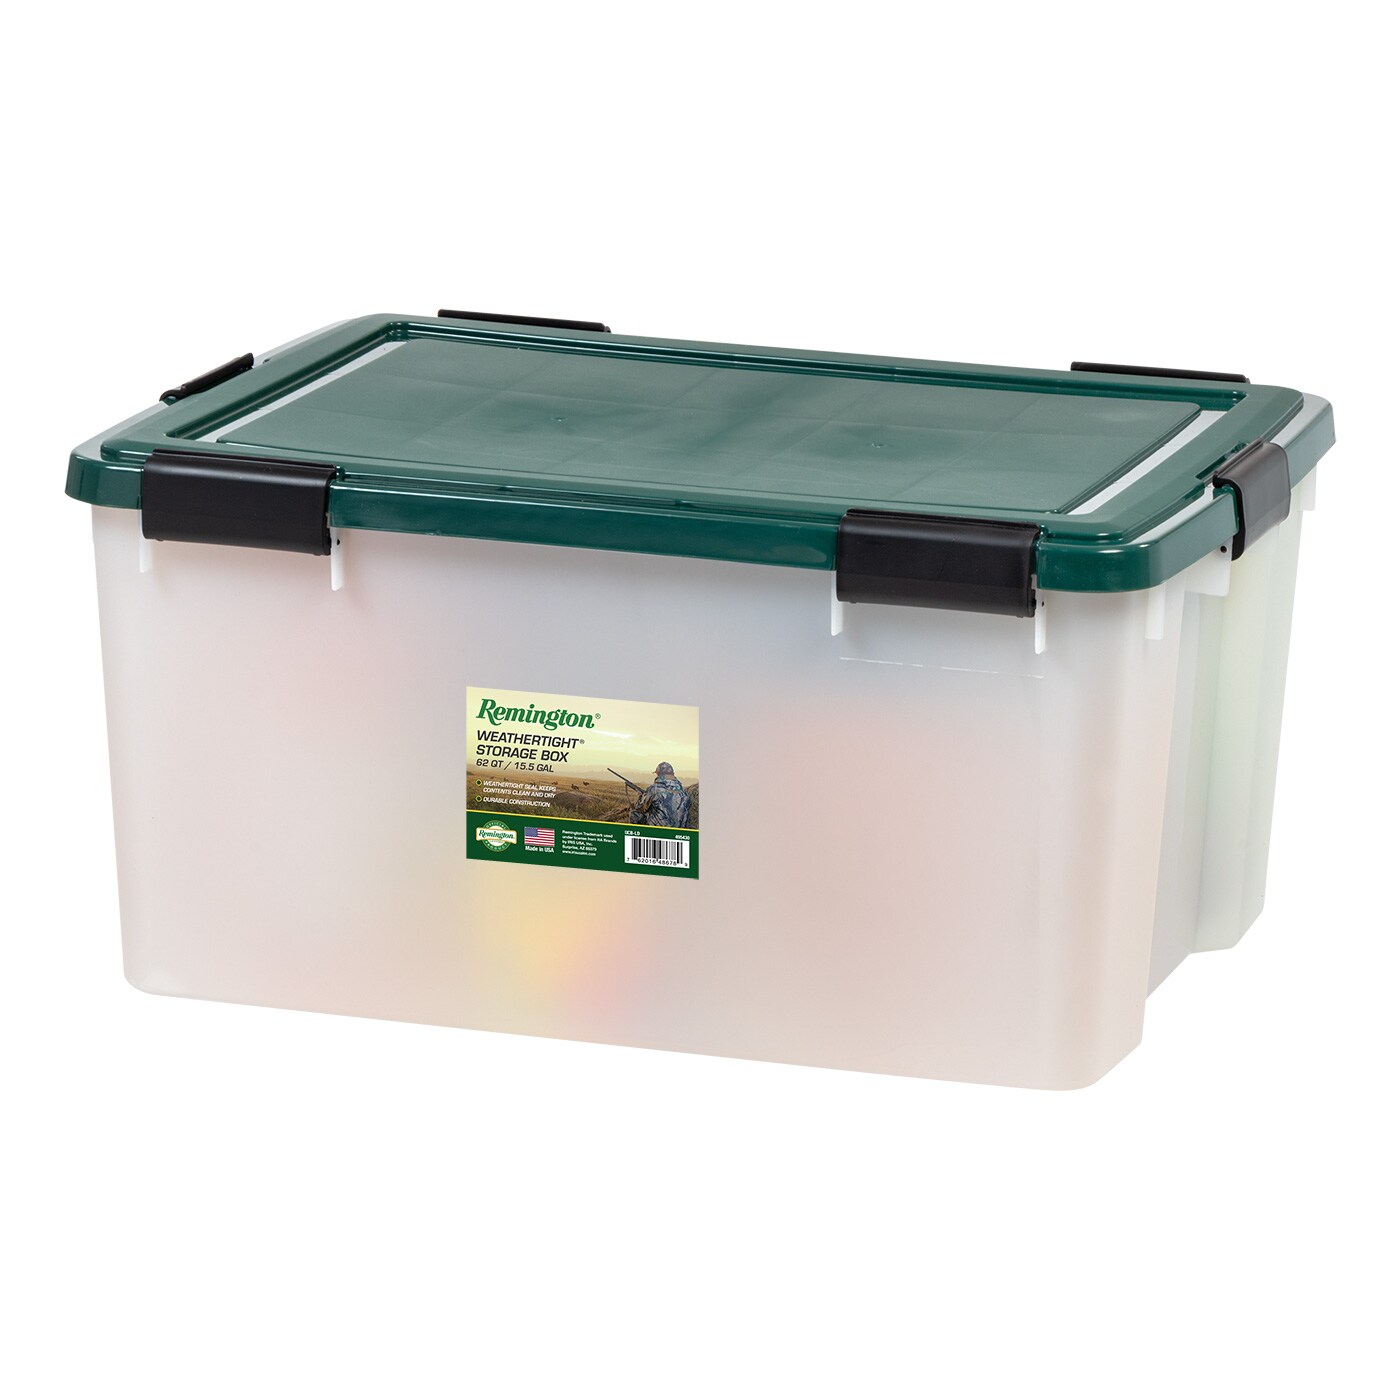 50 Quart Under Bed Buckle Up Storage Box, Mint Green Organizer Box